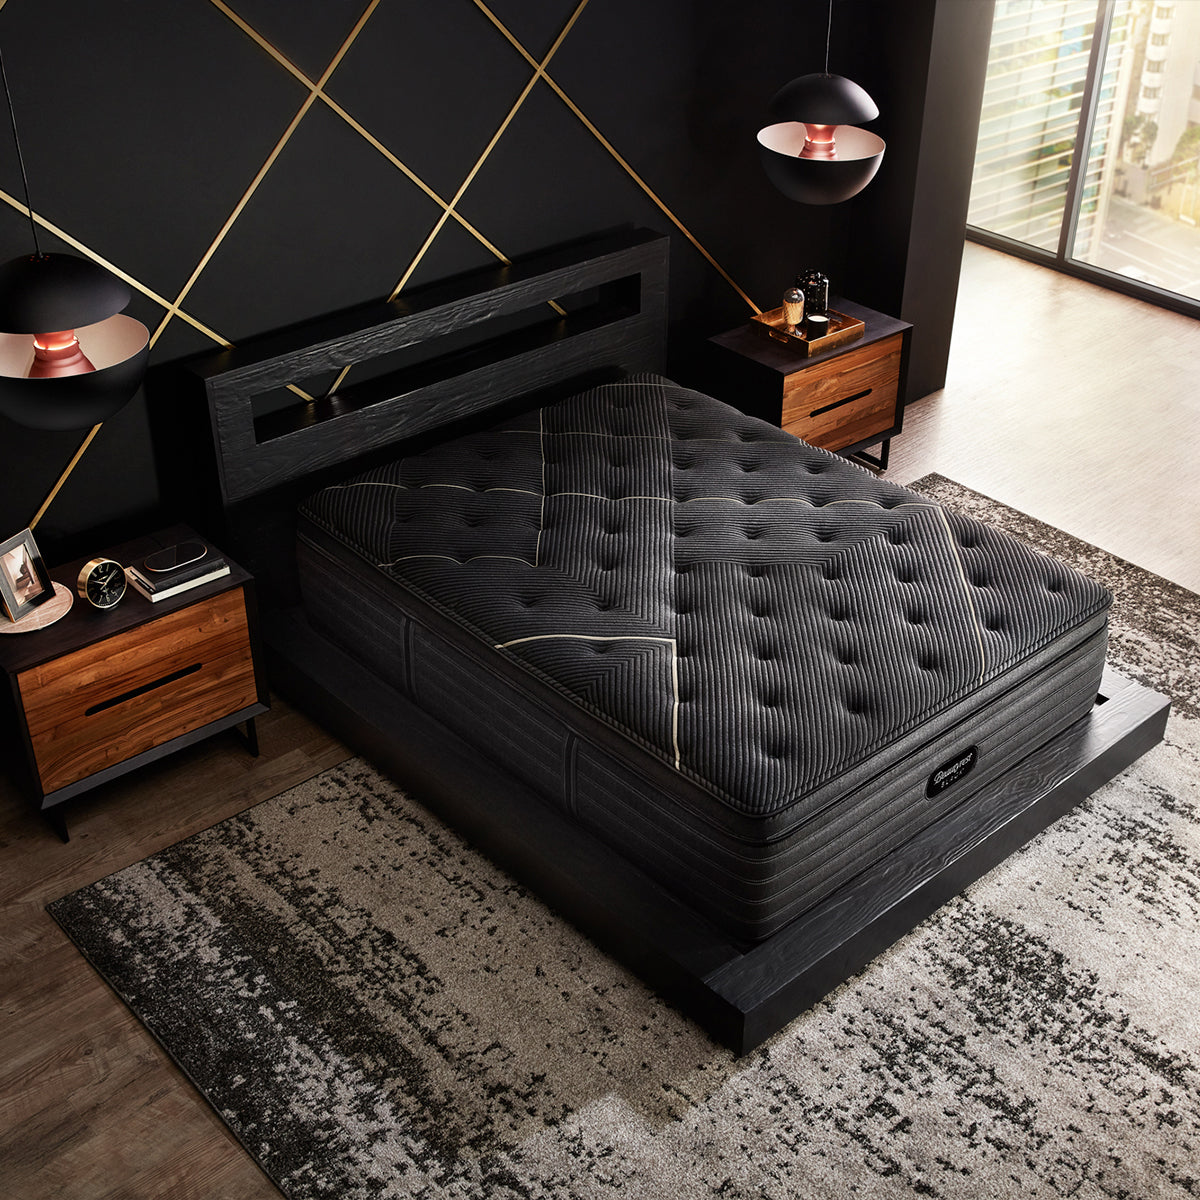 Beautyrest Black K-Class Firm Pillow Top Mattress On Bed Frame Overhead View